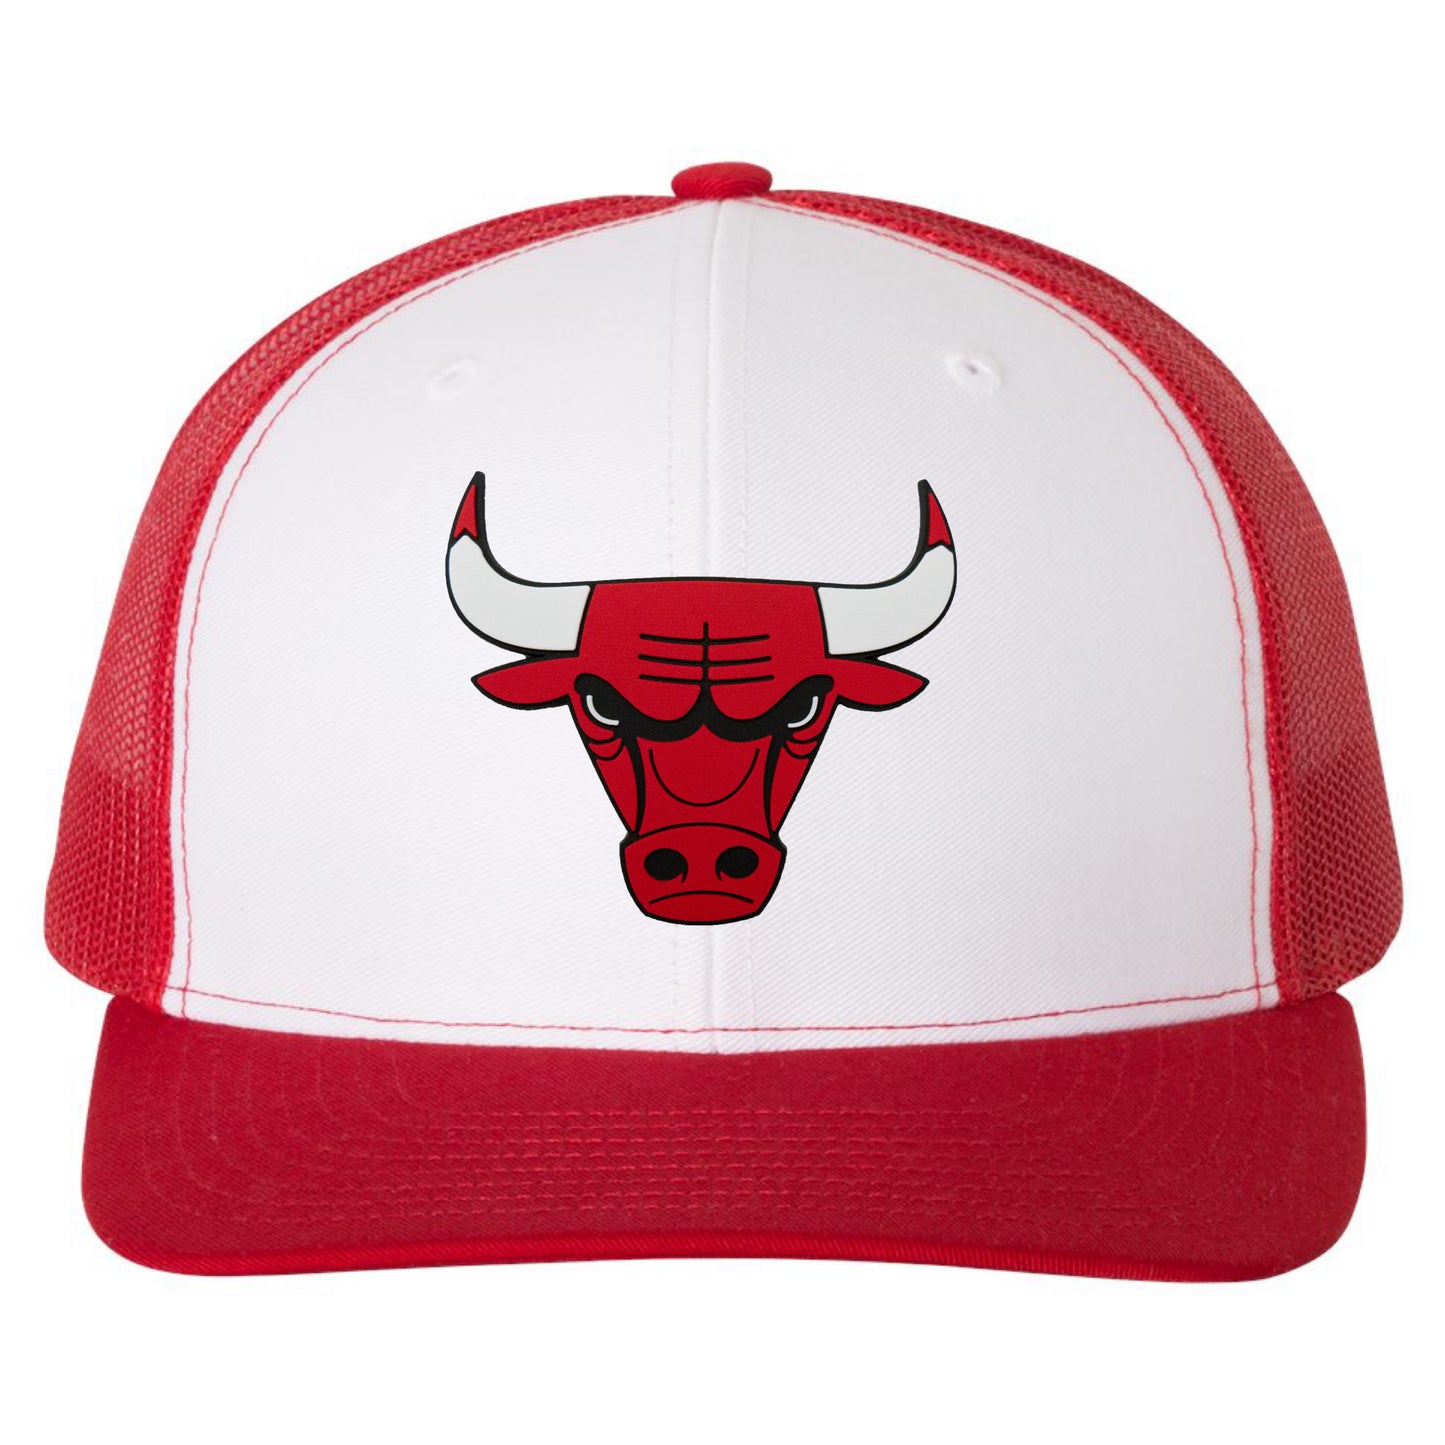 Chicago Bulls 3D Snapback Trucker Hat- White/ Red - Ten Gallon Hat Co.